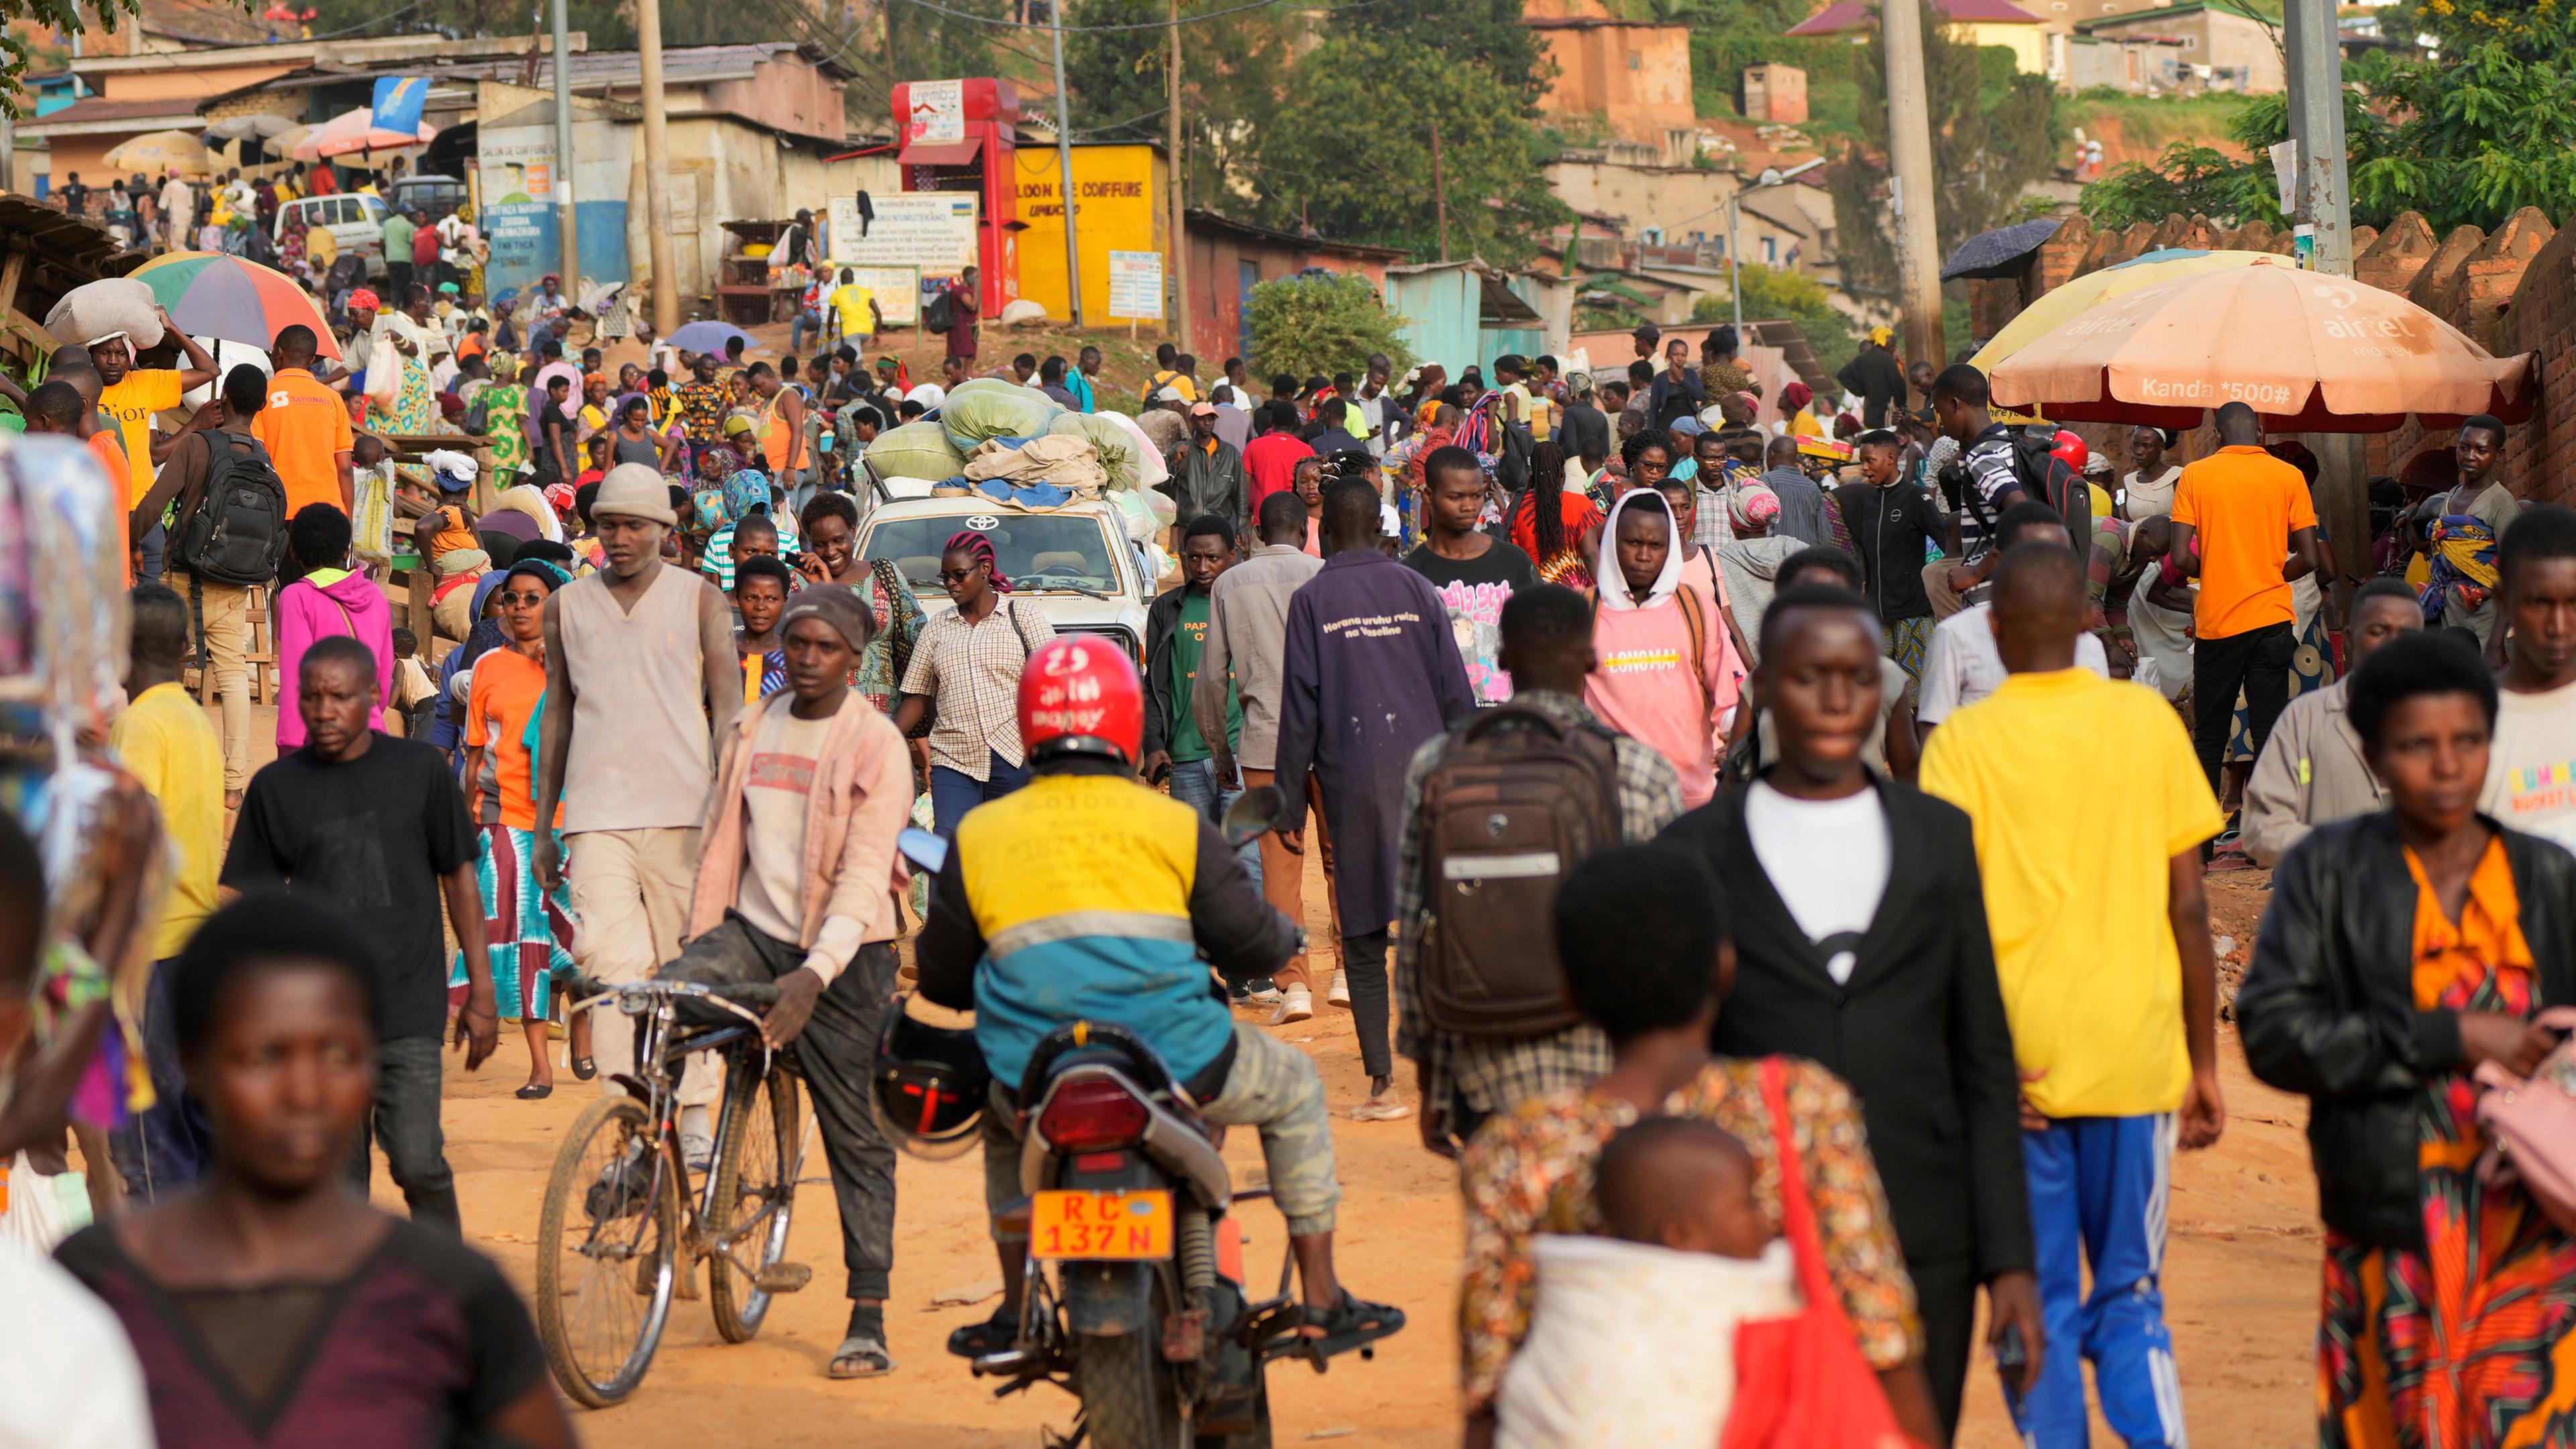 Eine große Menschenmenge in einer Siedlung in Ruanda.